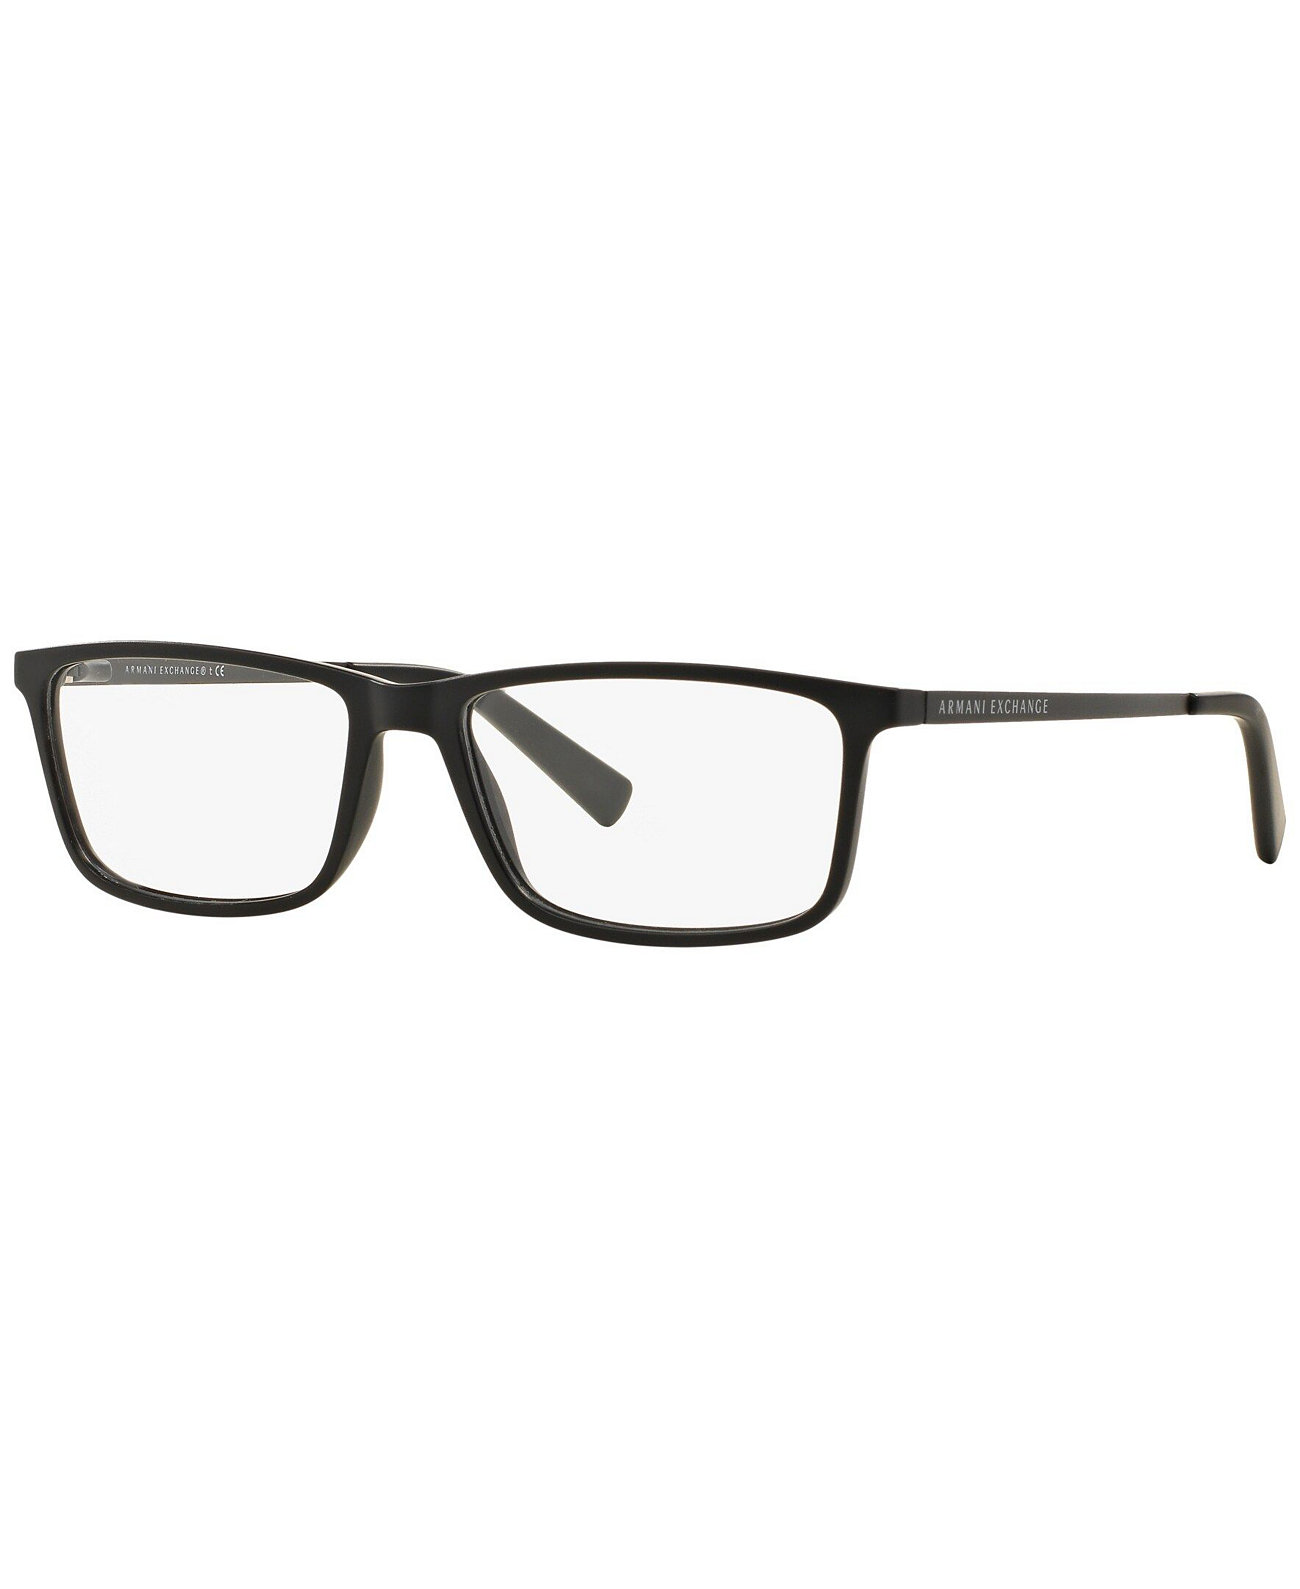 Мужские прямоугольные очки Armani Exchange AX3027 Armani